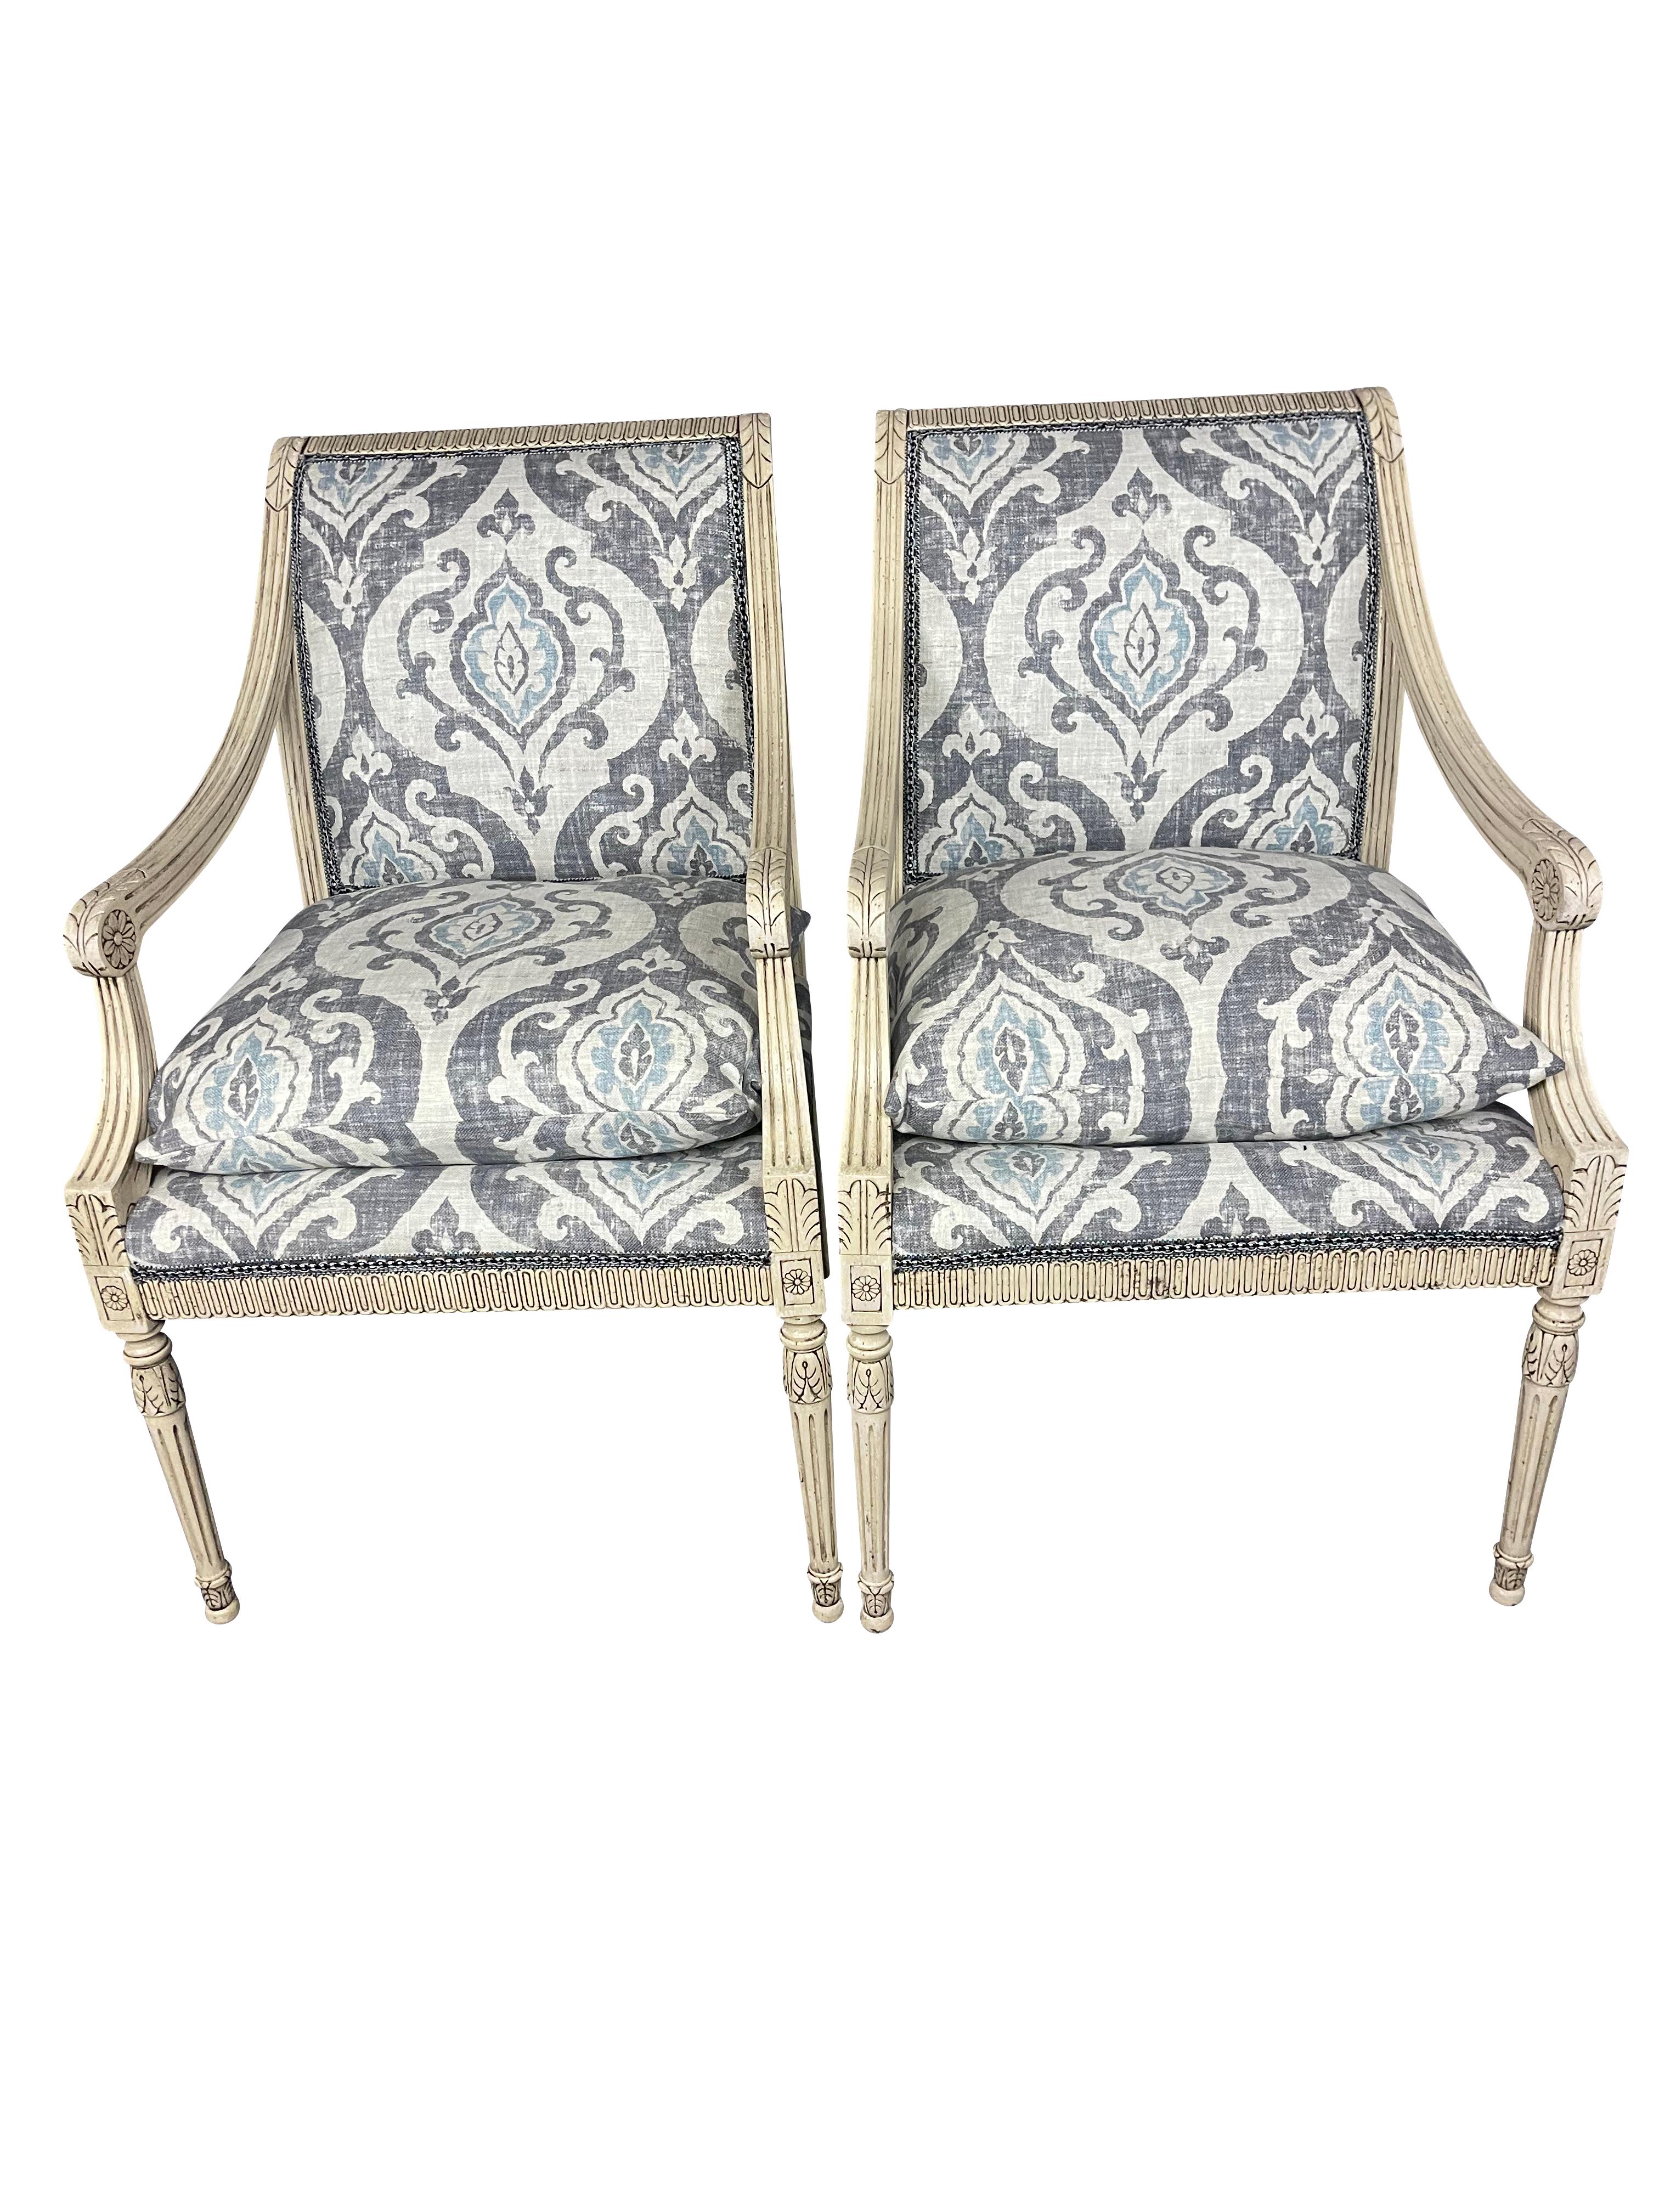 Ravissante paire de chaises de style Louis XVI, sculptées et peintes en gris, récemment retapissées par des professionnels dans un joli lin Ikat belge gris/bleu au design moderne. Les chaises sont amplement larges et confortables, avec une assise en